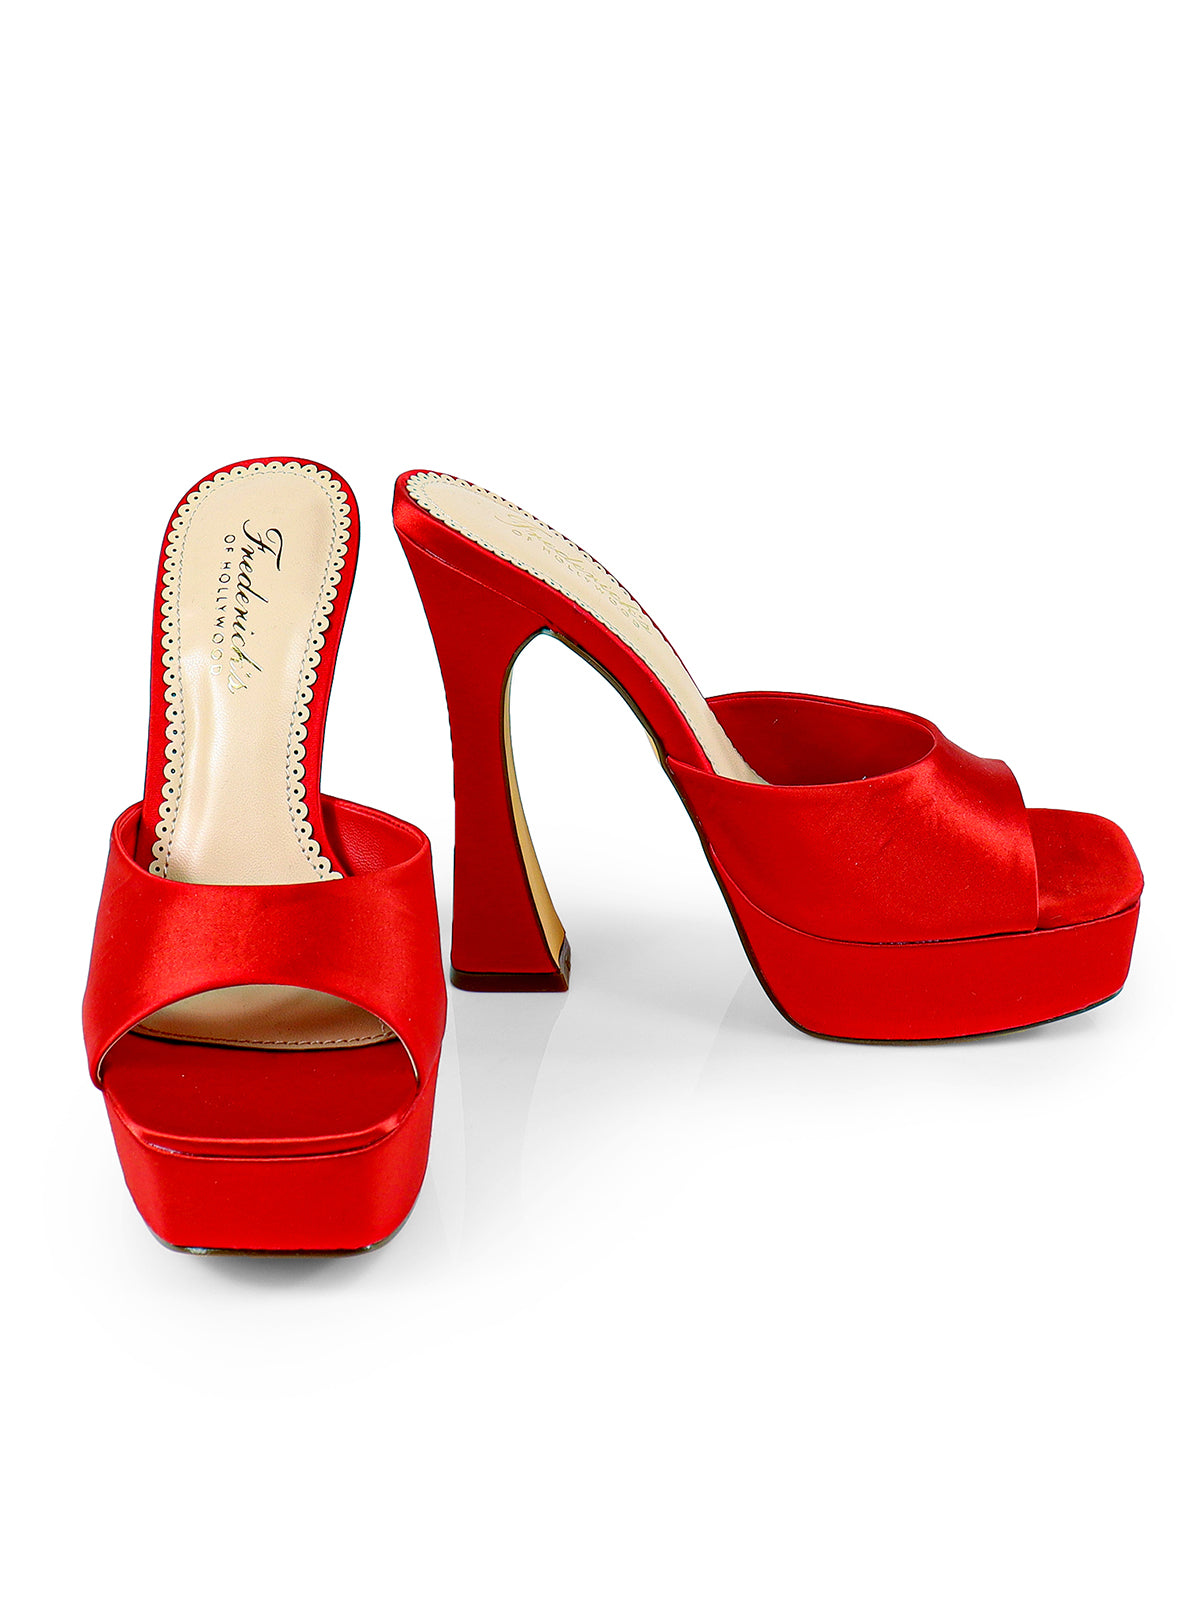 Elaina Platform Mule Heel - Red